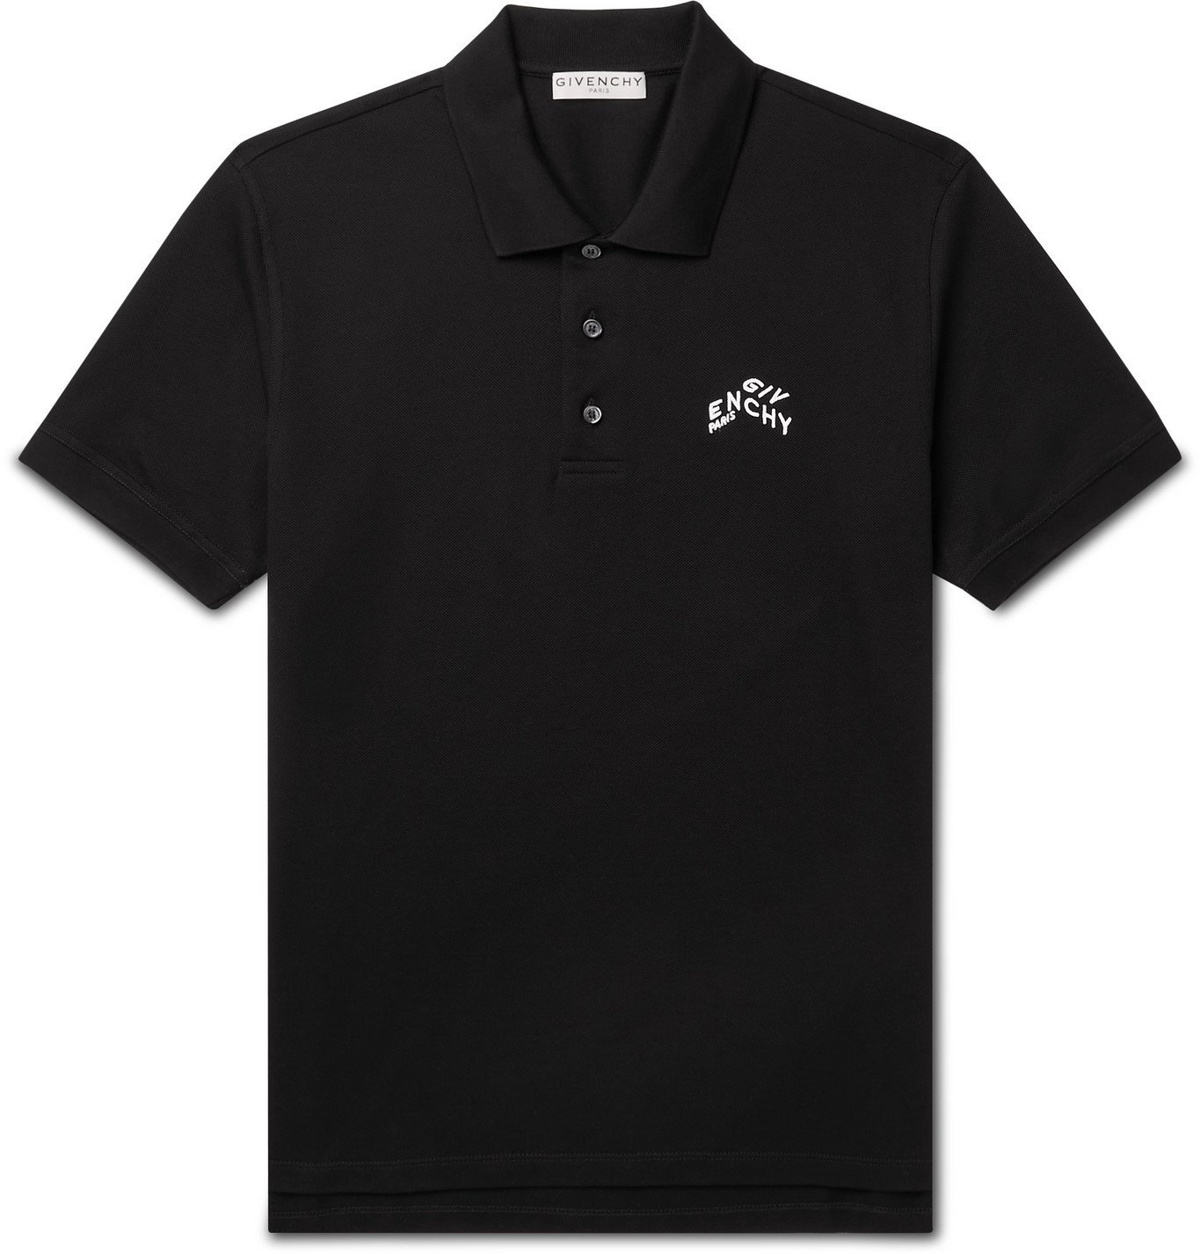 GIVENCHY - Logo-Embroidered Cotton-Piqué Polo Shirt - Black Givenchy